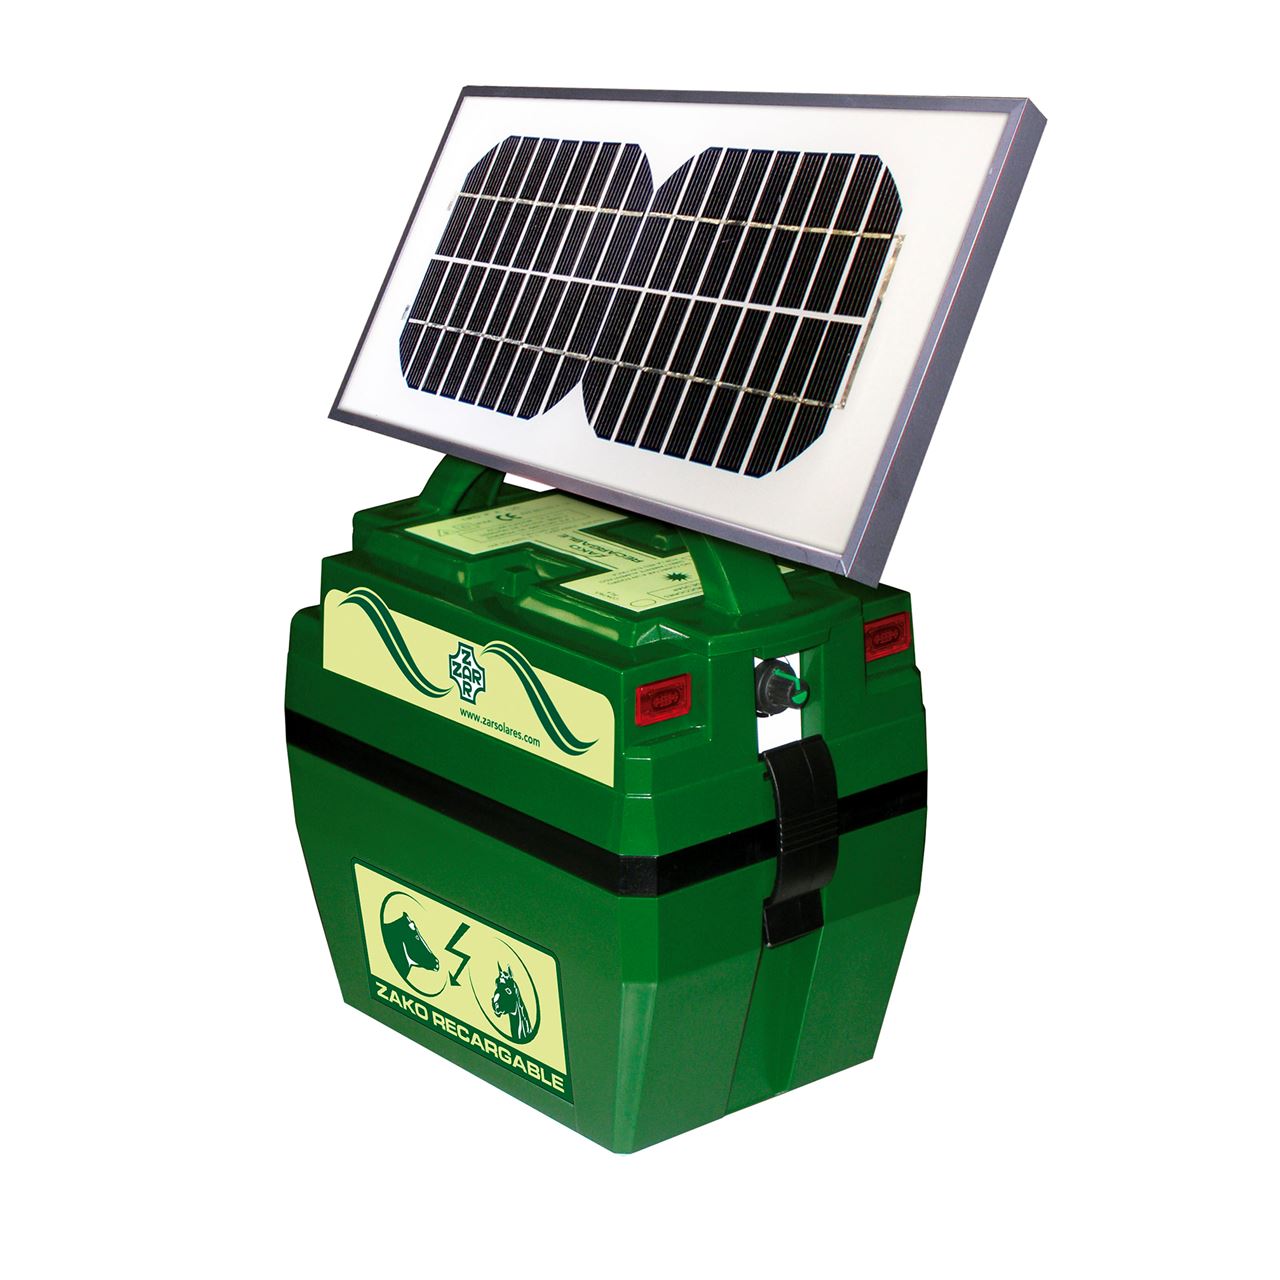 Pastor eléctrico a batería Zar Zako solar 12 V - Suministros Urquiza